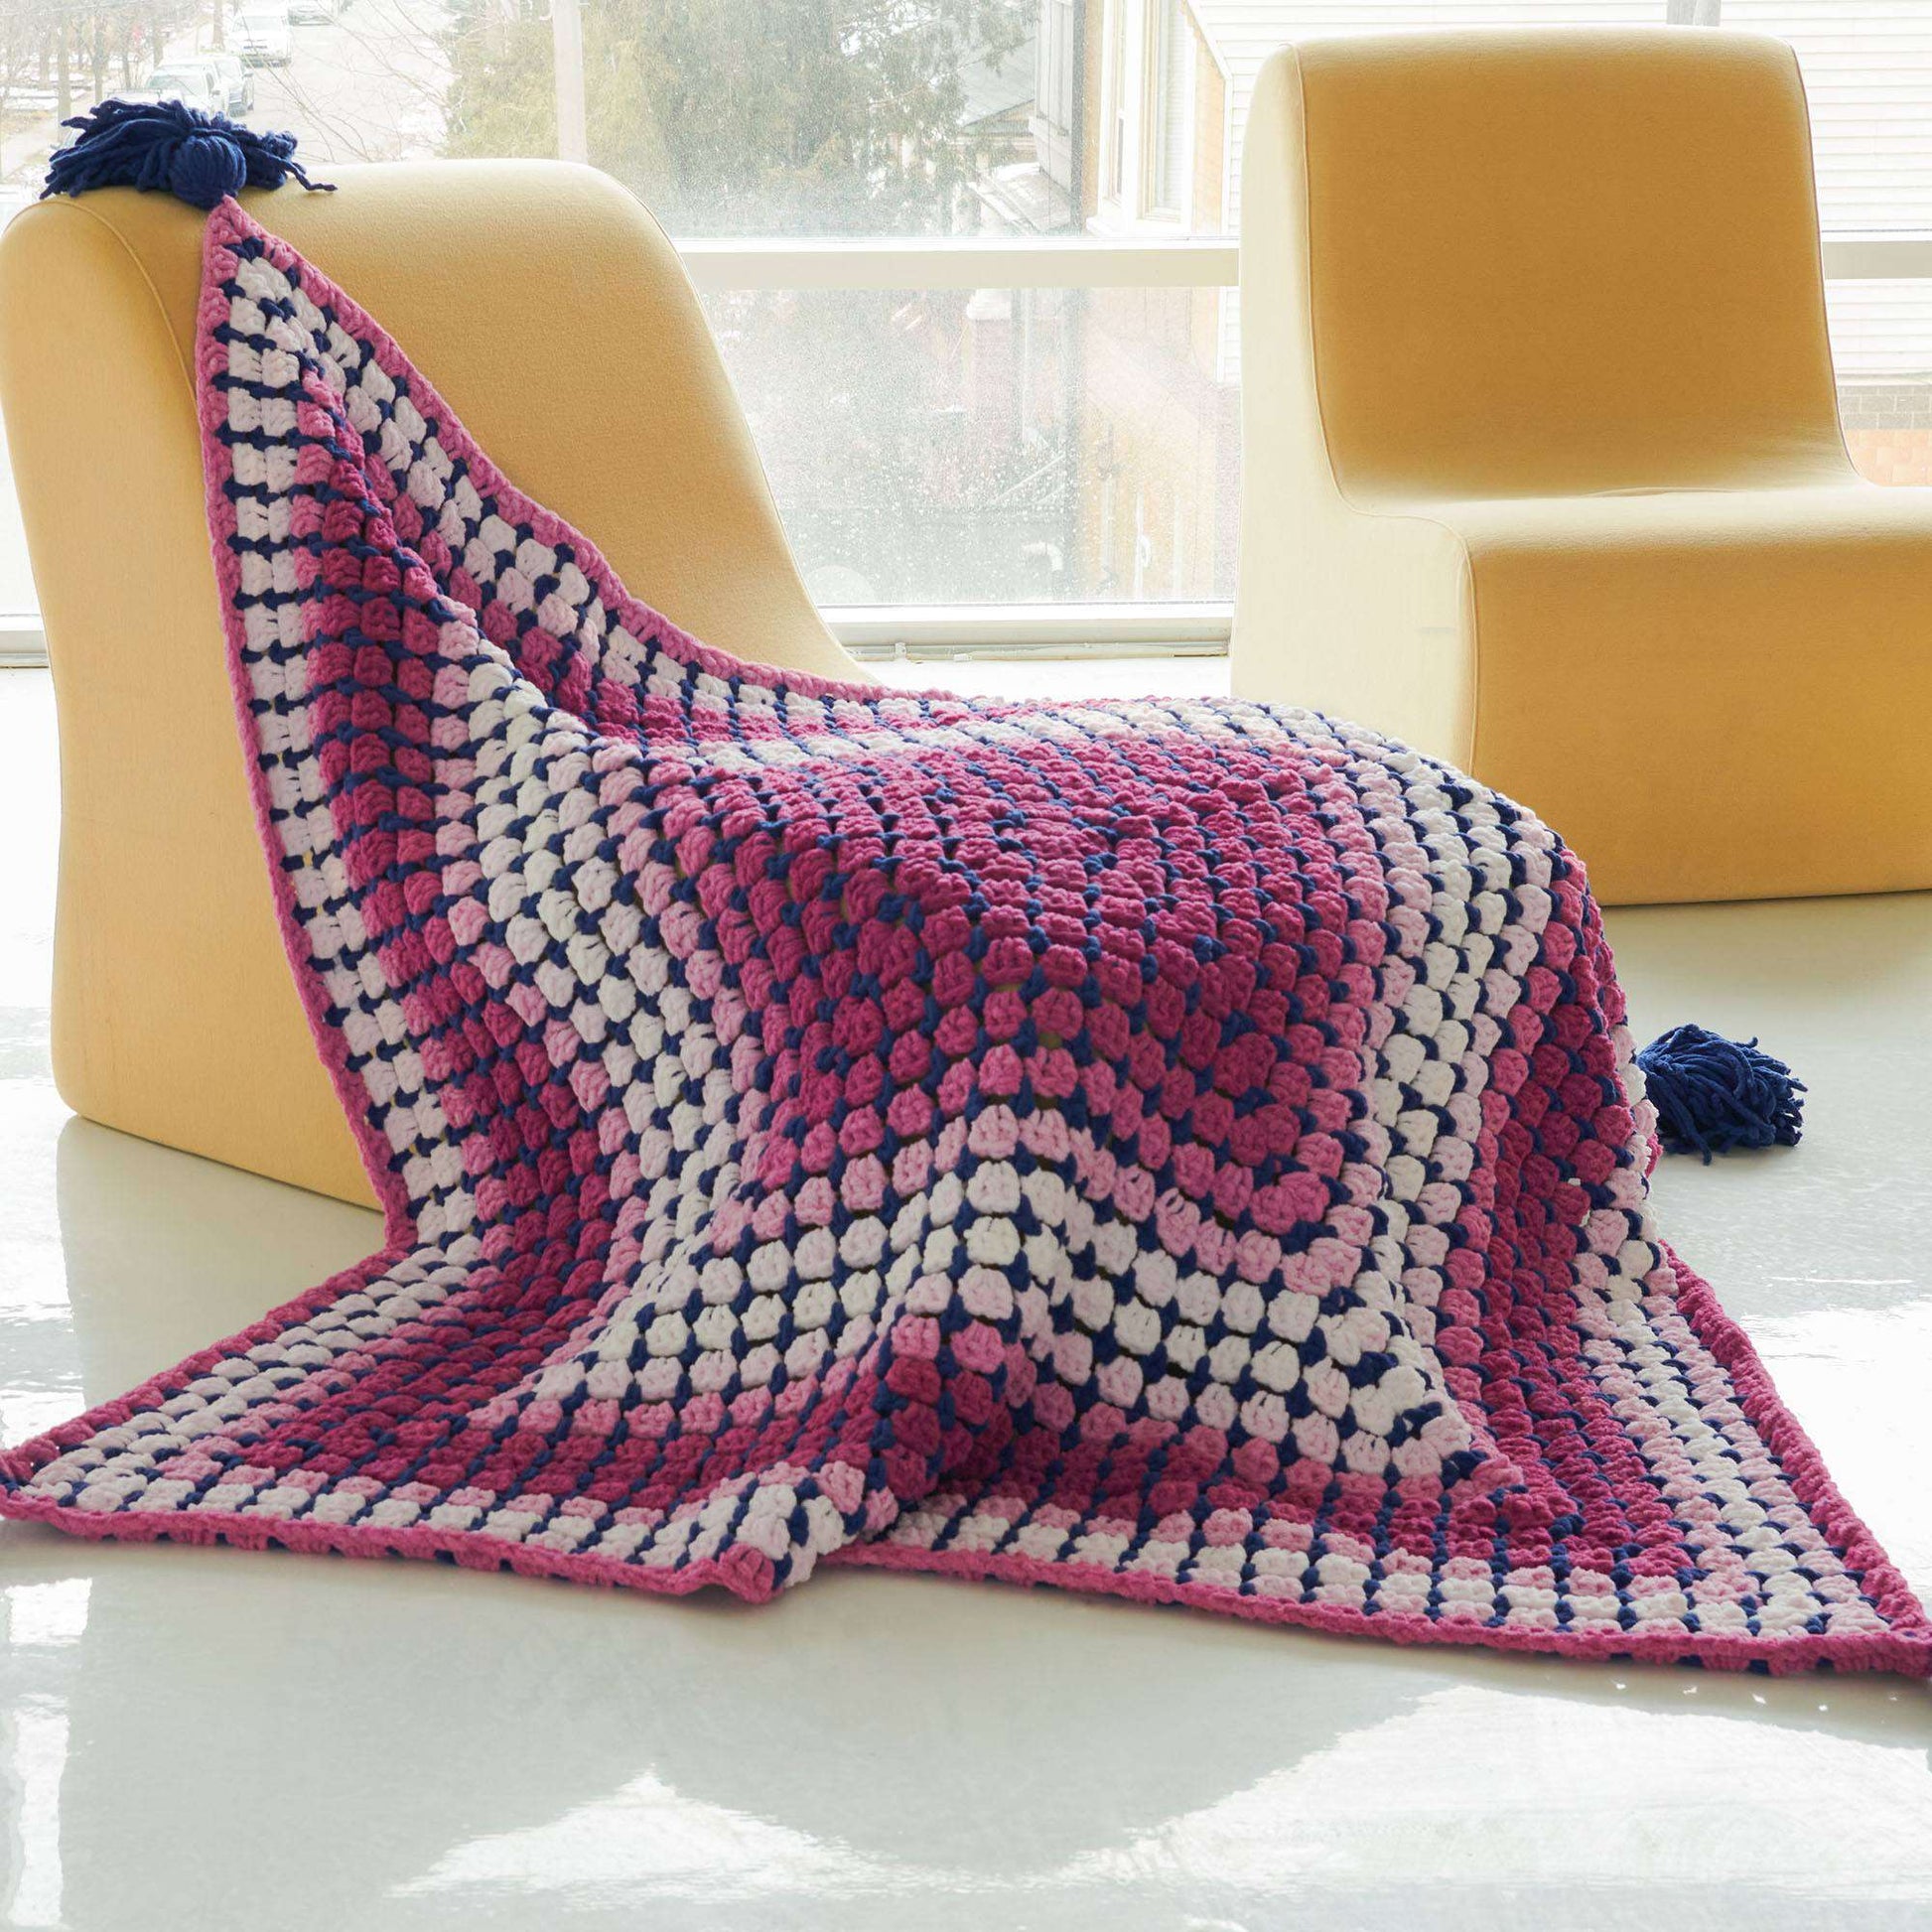 Baby blanket — Yarn Phase